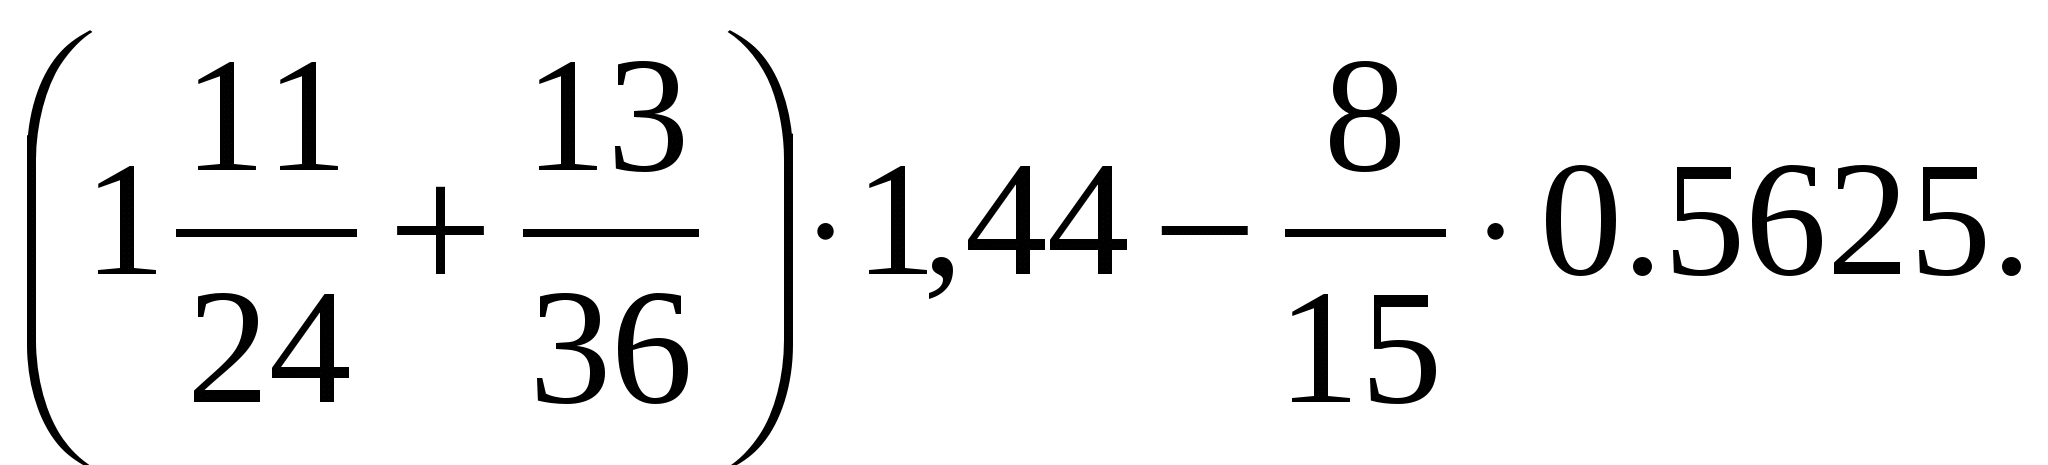 44 8 24